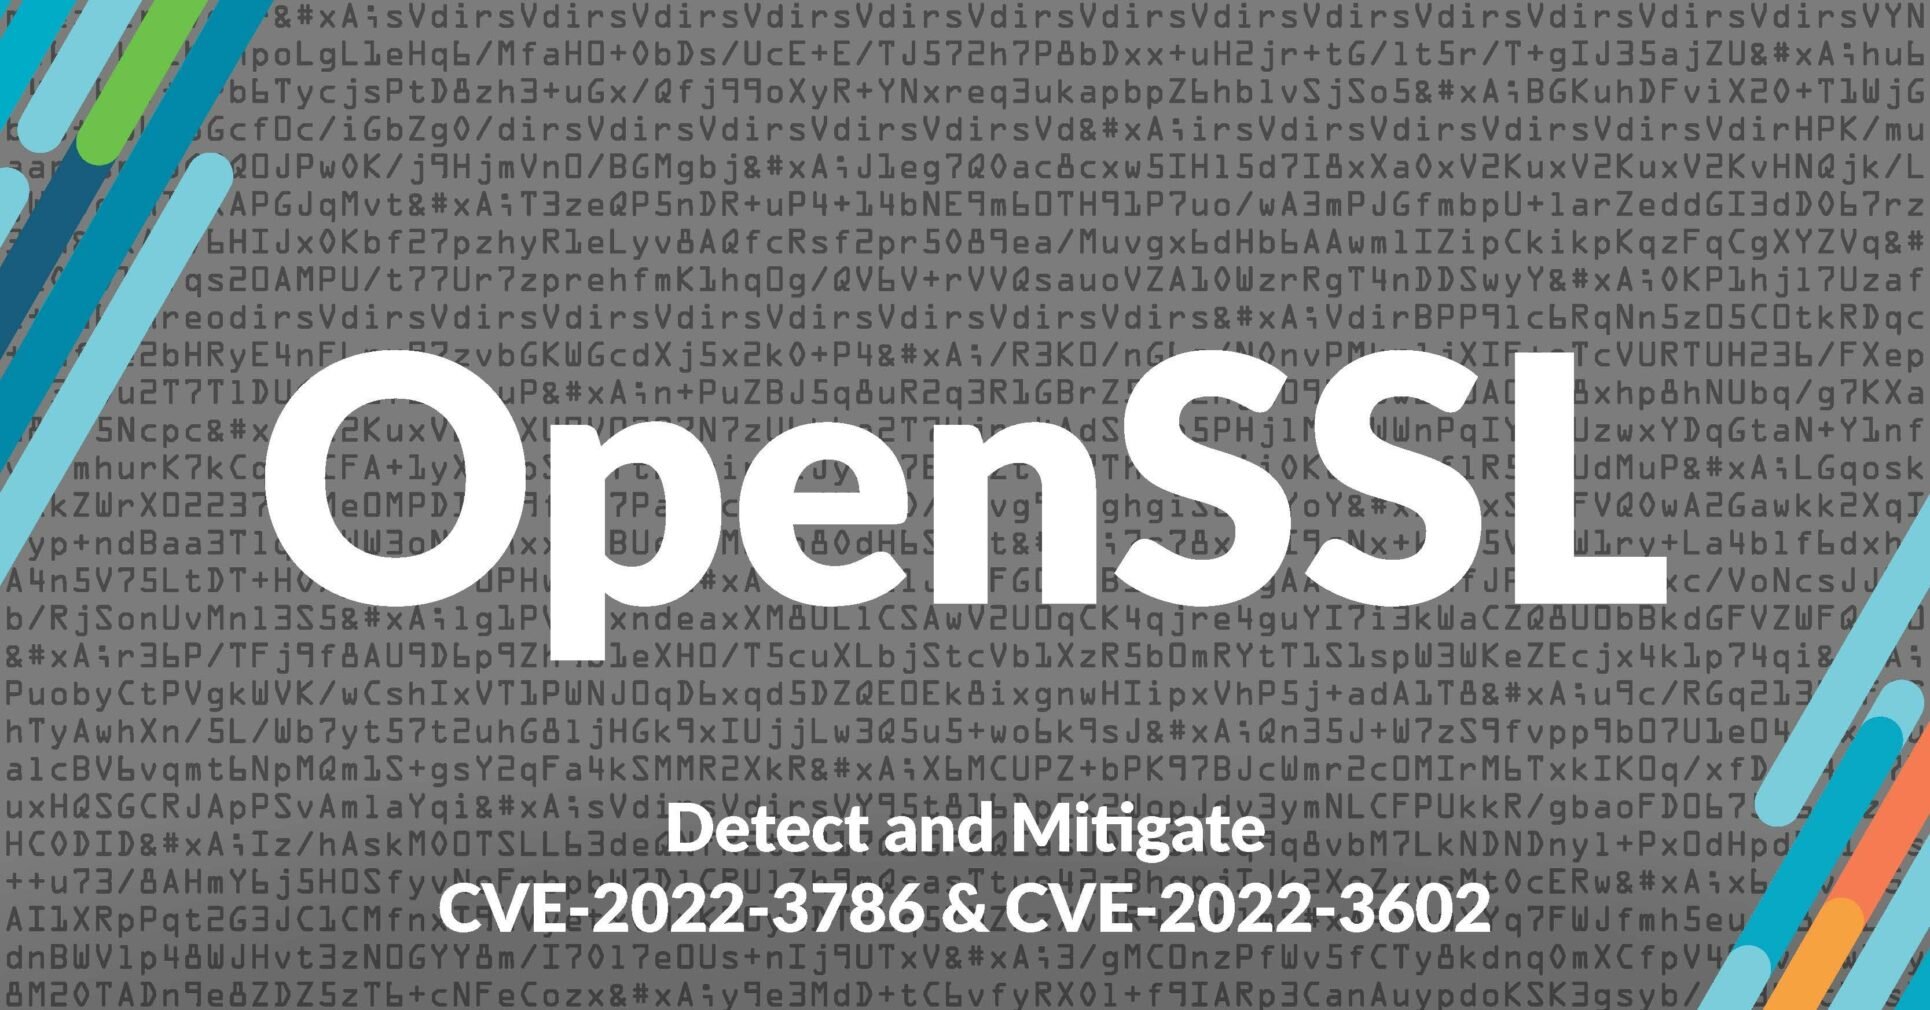 Sysdig Secure を使用して CVE 2022-3602 および CVE 2022-3786: OpenSSL 3.0.7 の軽減策を検出し、優先順位付けを行う